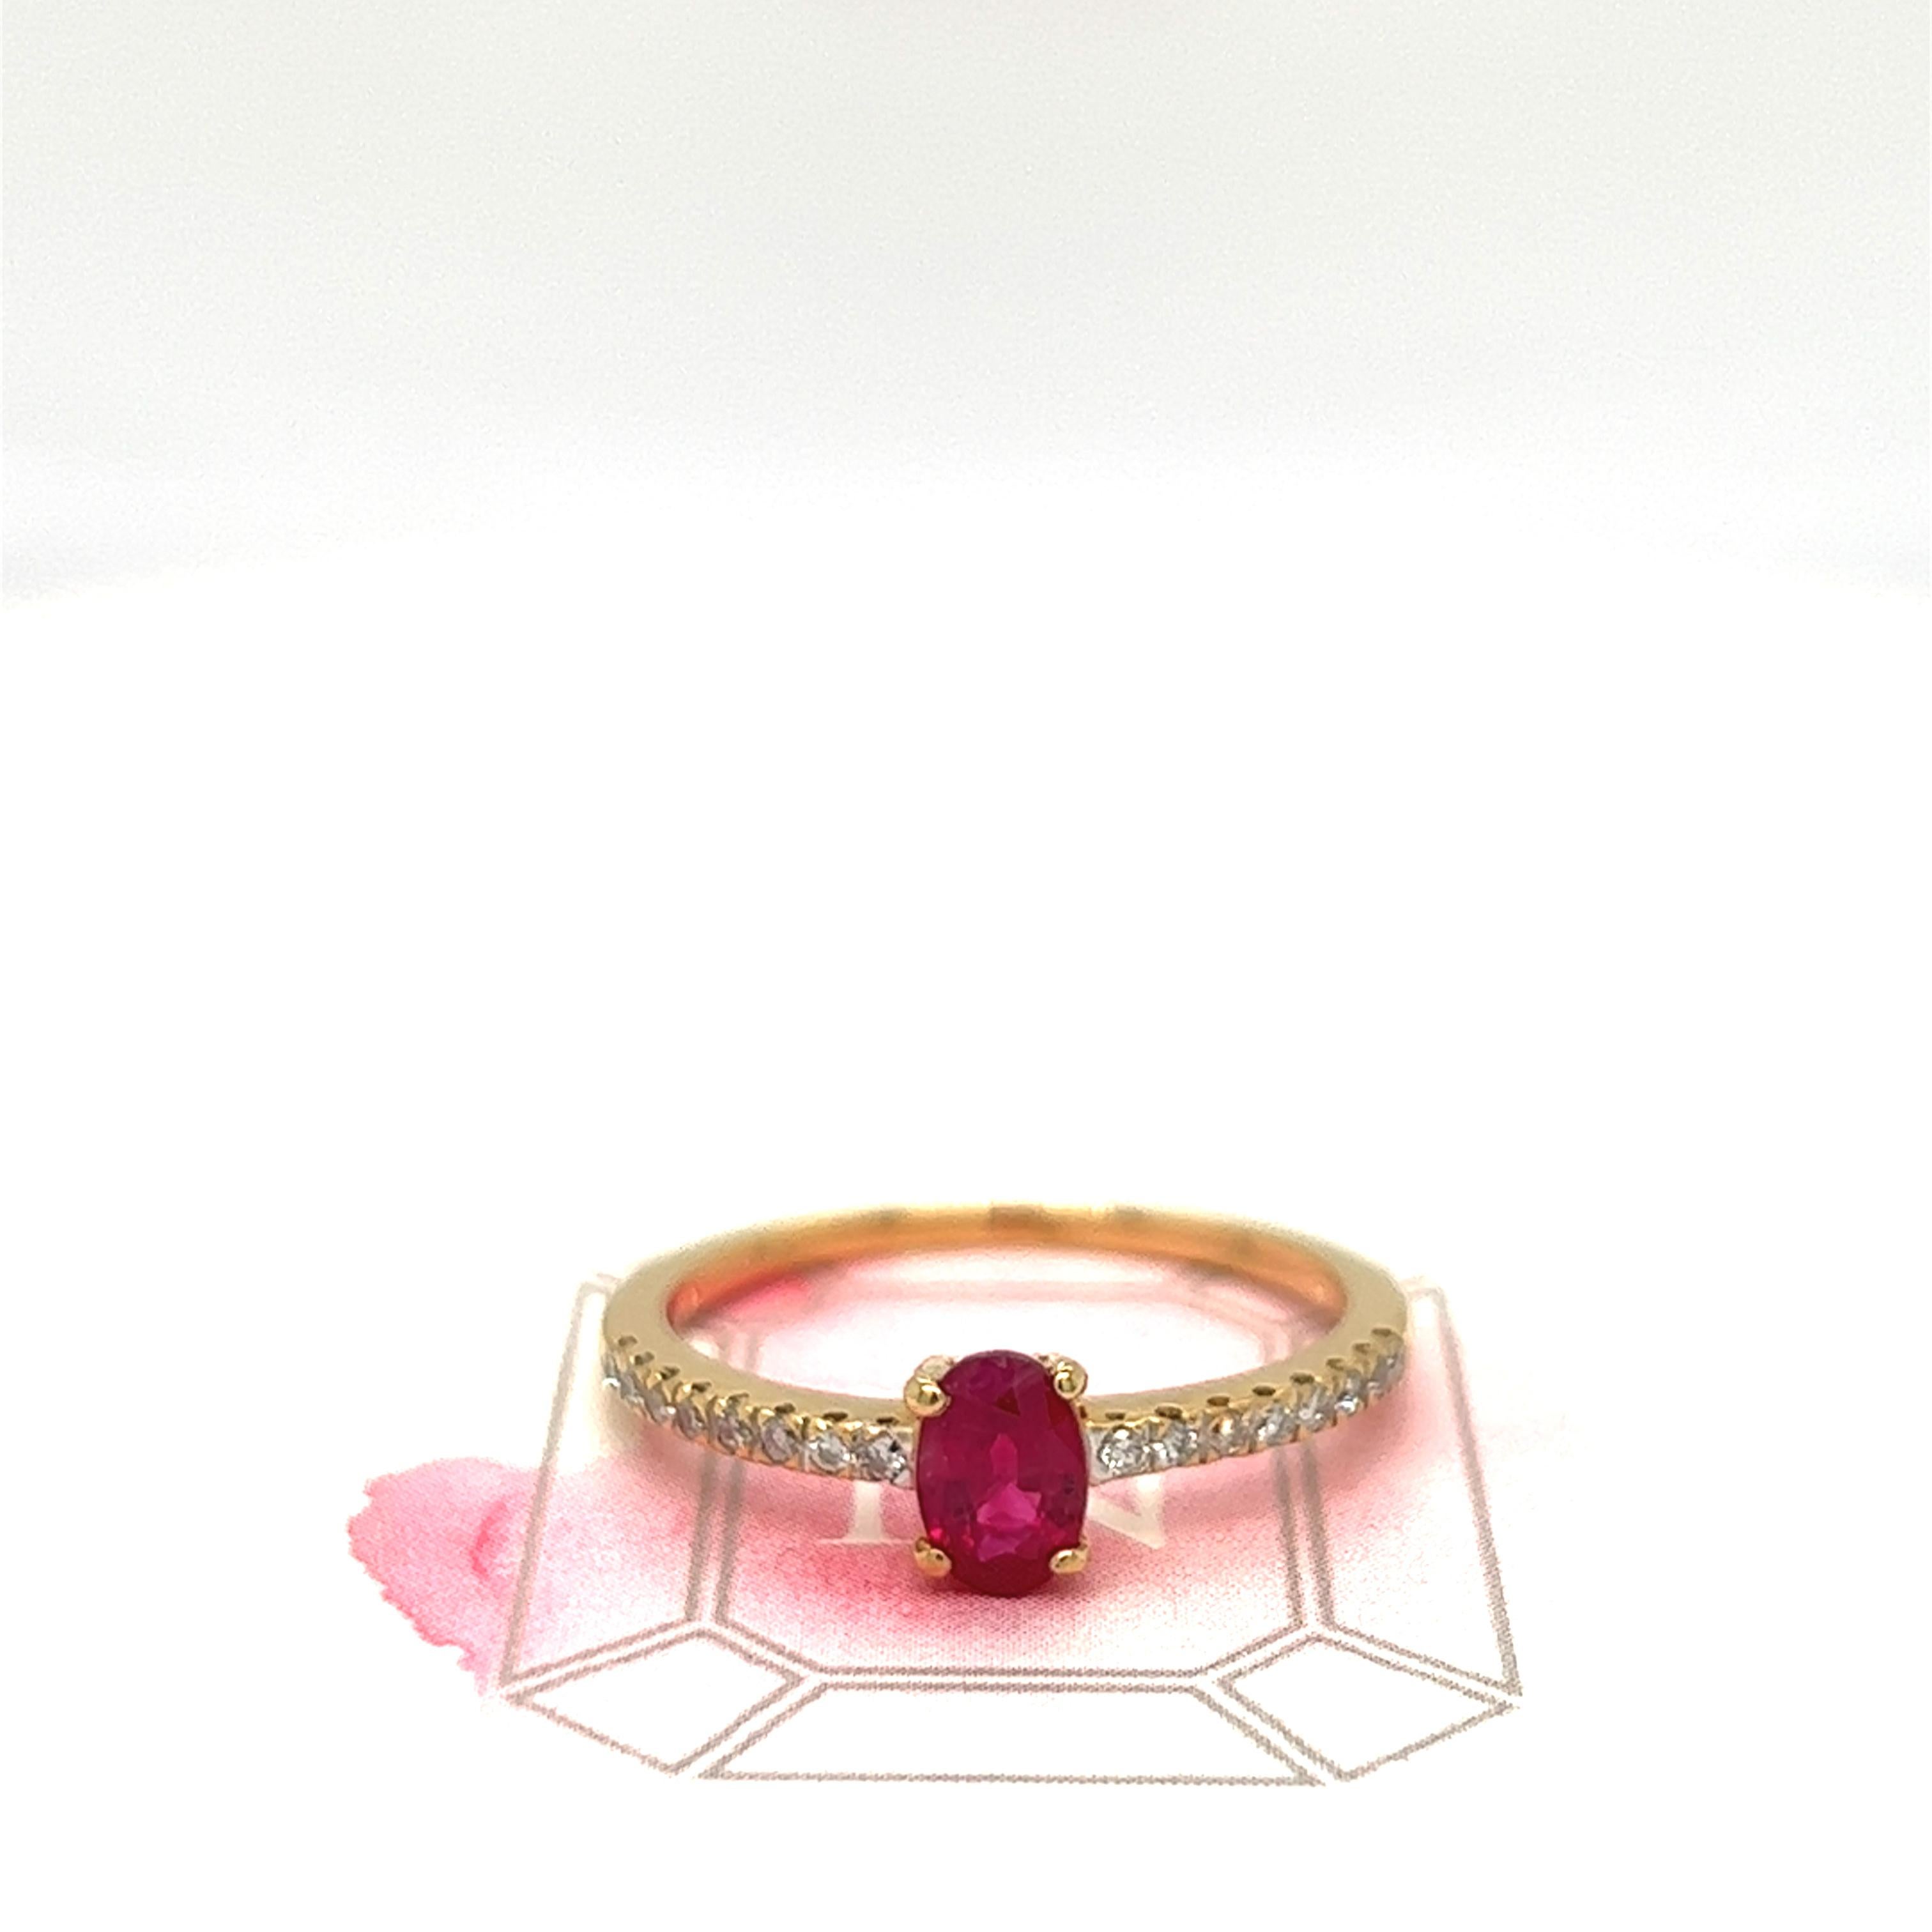 Schöne lebendige rote ovale Rubin etwa 0,40 Karat ist in der Mitte dieses schönen Ring. Kleine farblose Diamanten glitzern auf den Schultern auf halber Höhe und sorgen für einen hohen Tragekomfort. Der Ring wurde aus 18 Karat Gelbgold gefertigt und